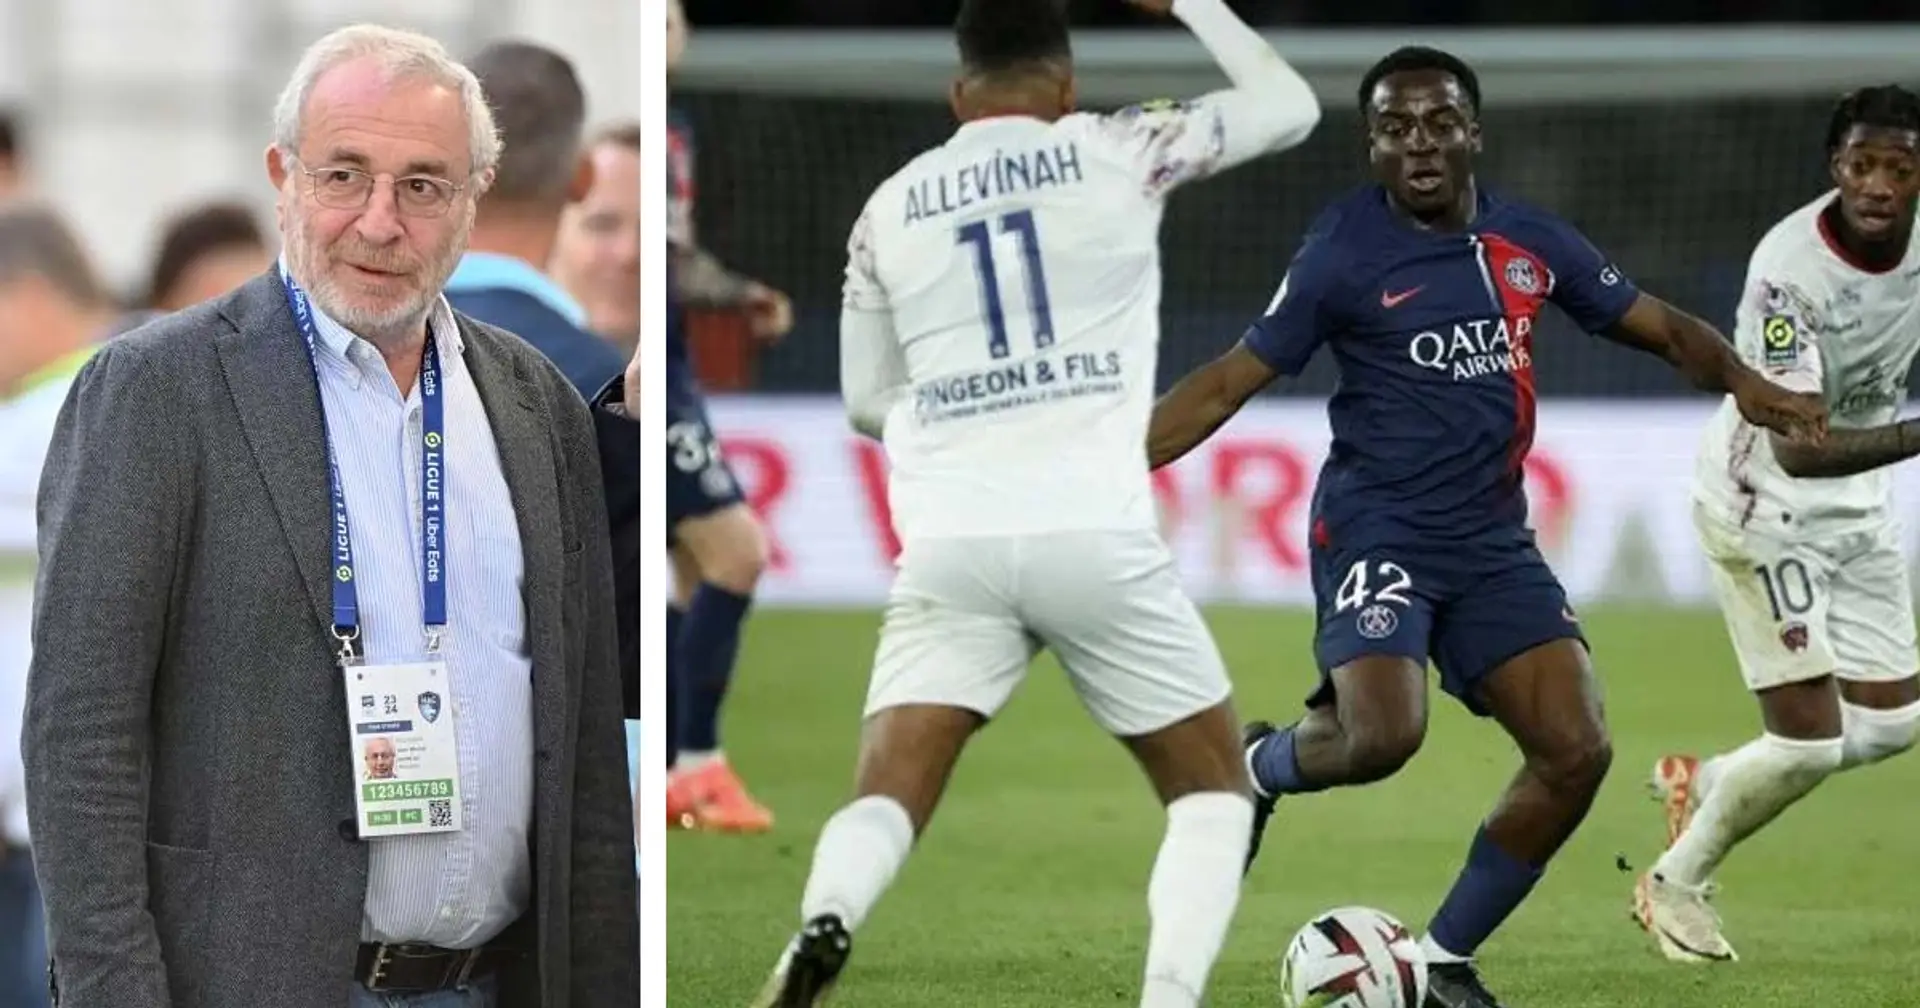 "Le PSG se fout du Championnat de France", un président de club accuse Paris suite au match vs Clermont